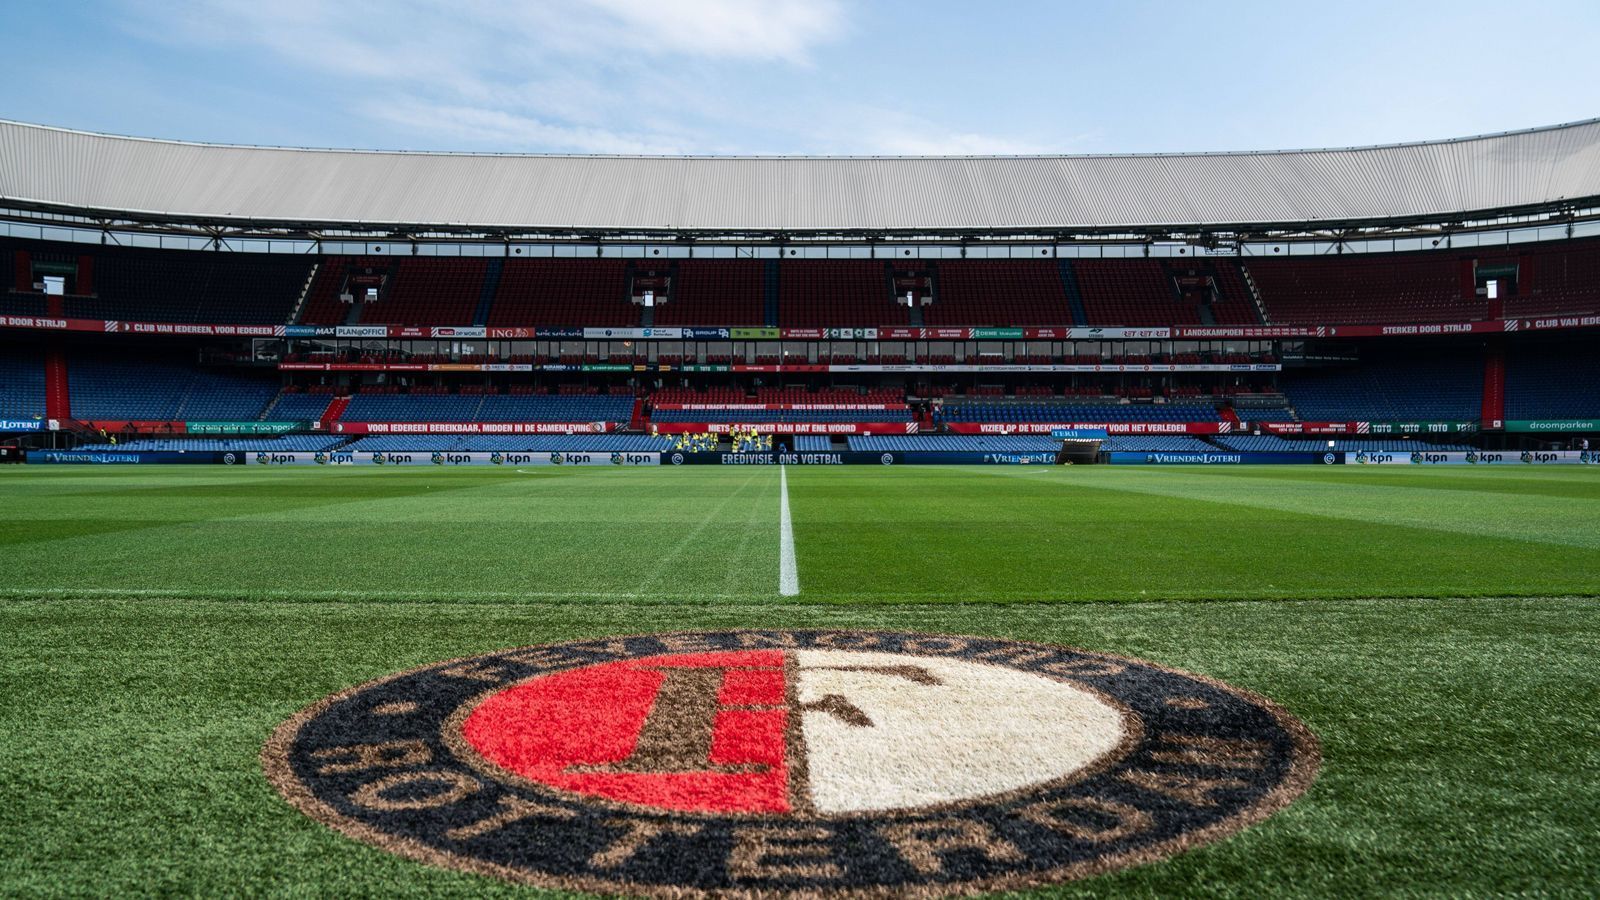 
                <strong>De Kuip (Rotterdam)</strong><br>
                Im Jahr 1937 wurde das De Kuip in der niederländischen Stadt Rotterdam eröffnet, es ist die Heimstätte von Feyenoord. 1994 kam es zu einer Renovierung, in dessen Rahmen ein Halbdach eingebaut wurde. Sechs Jahre später fanden dort dann auch Spiele bei der EM 2000 statt, etwa das Endspiel zwischen Frankreich und Italien. Offiziell ist das De Kuip mit 51.117 Plätze das zweitgrößte Fußballstadion in den Niederlanden, aus Sicherheitsgründen dürfen heutzutage aber nur 47.000 Fans in die Arena. Kurios: Für die Gästefans gibt es extra einen separaten Tunnel-Zugang zum Stadion, sodass sich Anhänger von Feyenoord und der Auswärtsmannschaft erst gar nicht im Vorfeld der Begegnung in die Quere kommen können. 
              